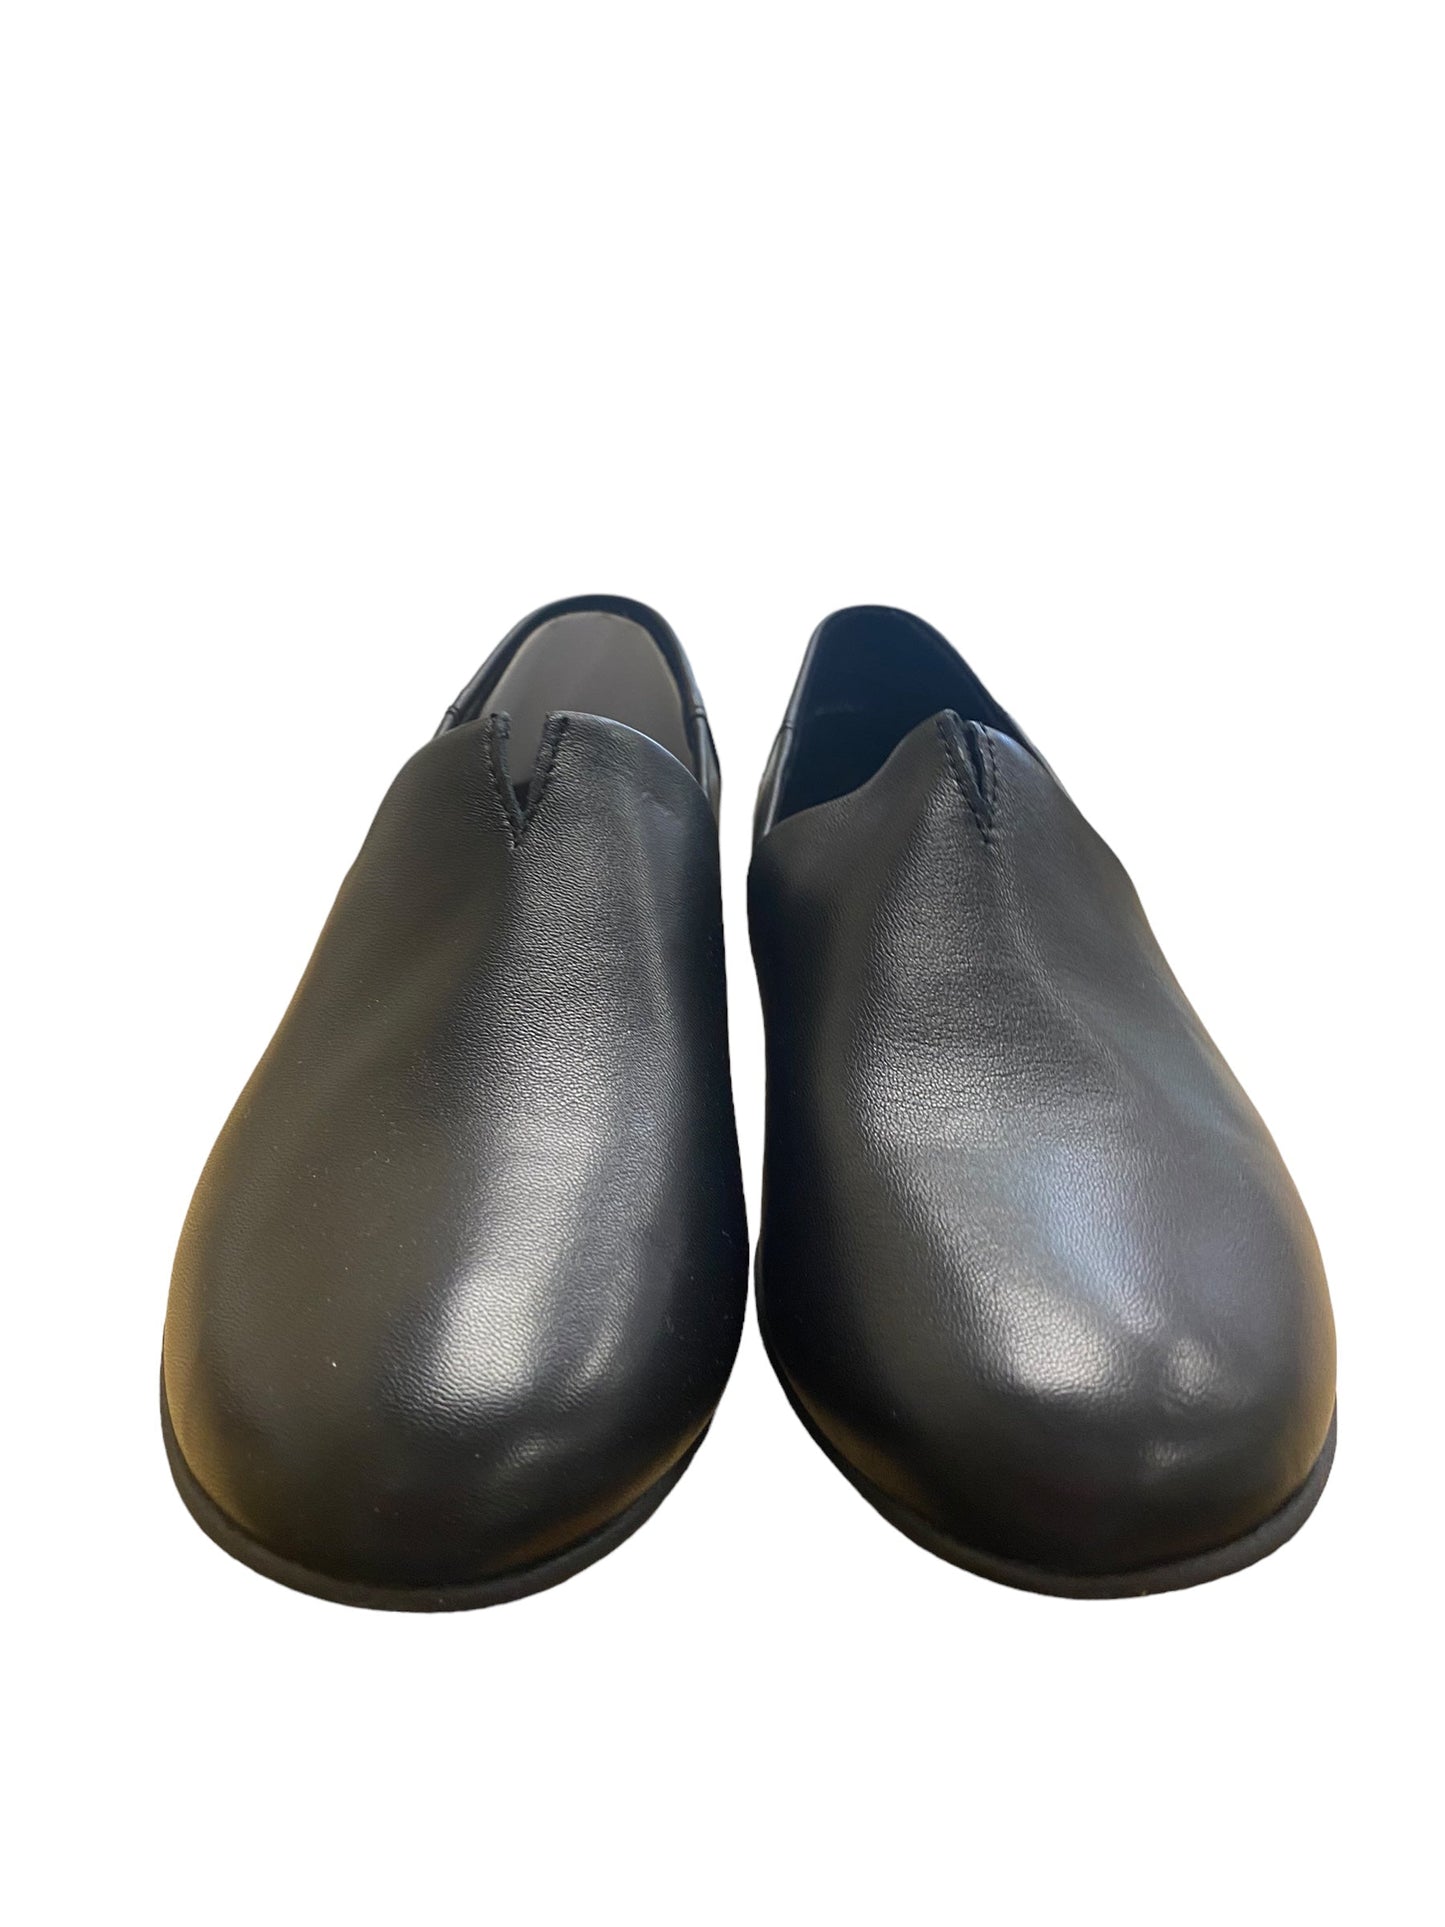 Black Shoes Flats Boc, Size 8.5